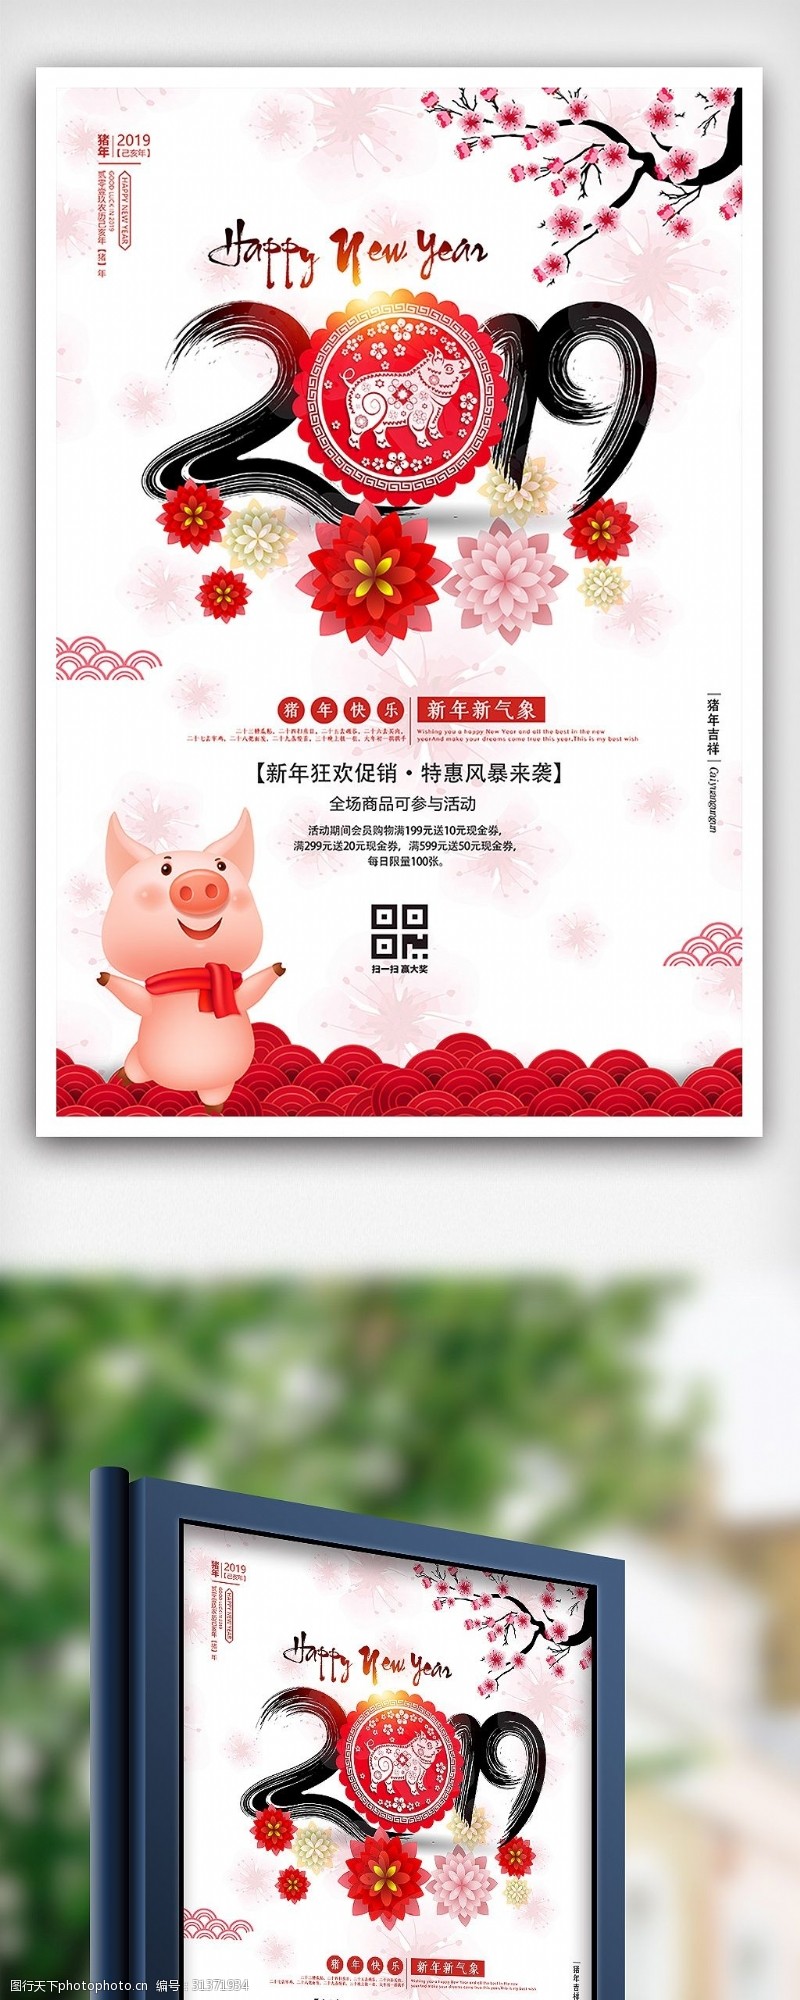 新年素材图片下载中国风猪年快乐2019新年海报设计